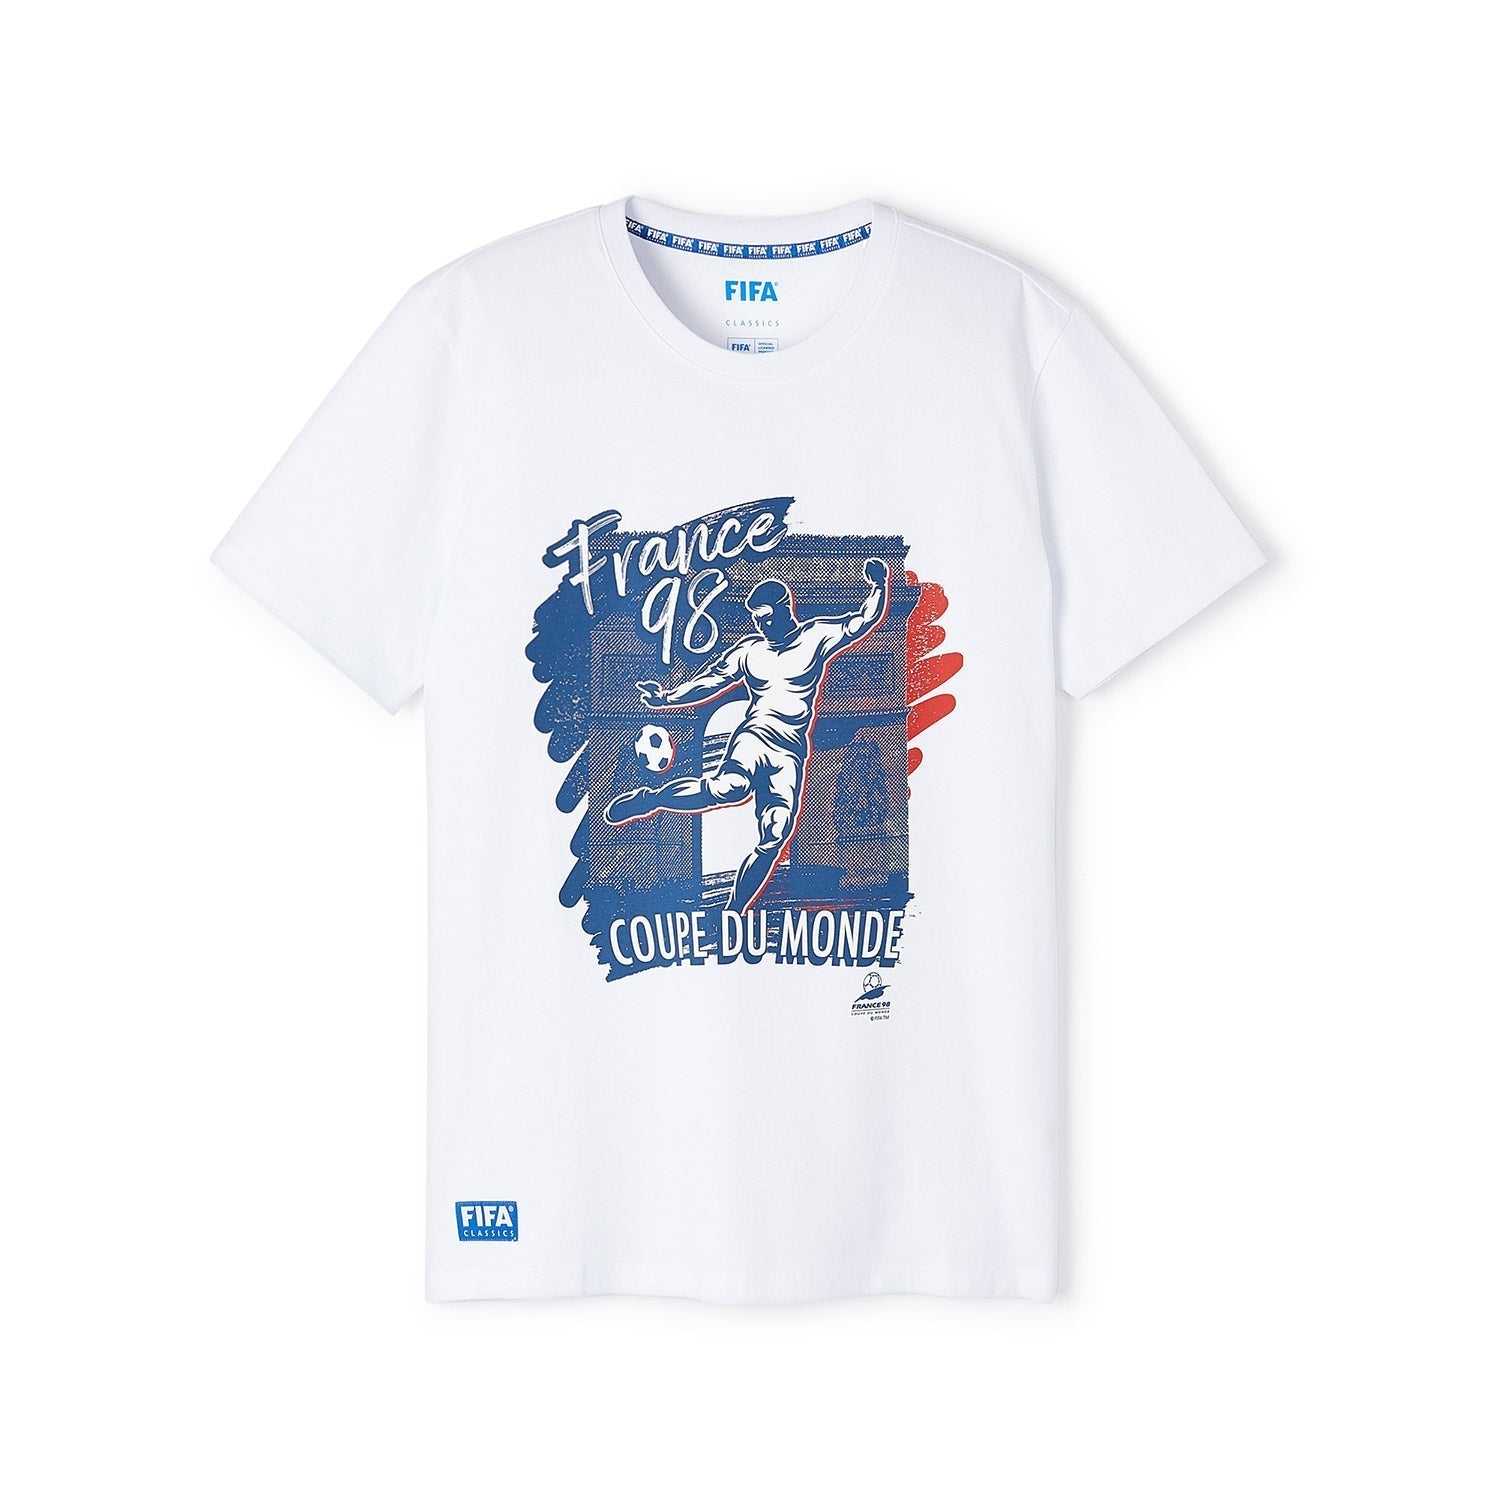 FIFA Rewind France '98 - Coupe Du Monde T-Shirt